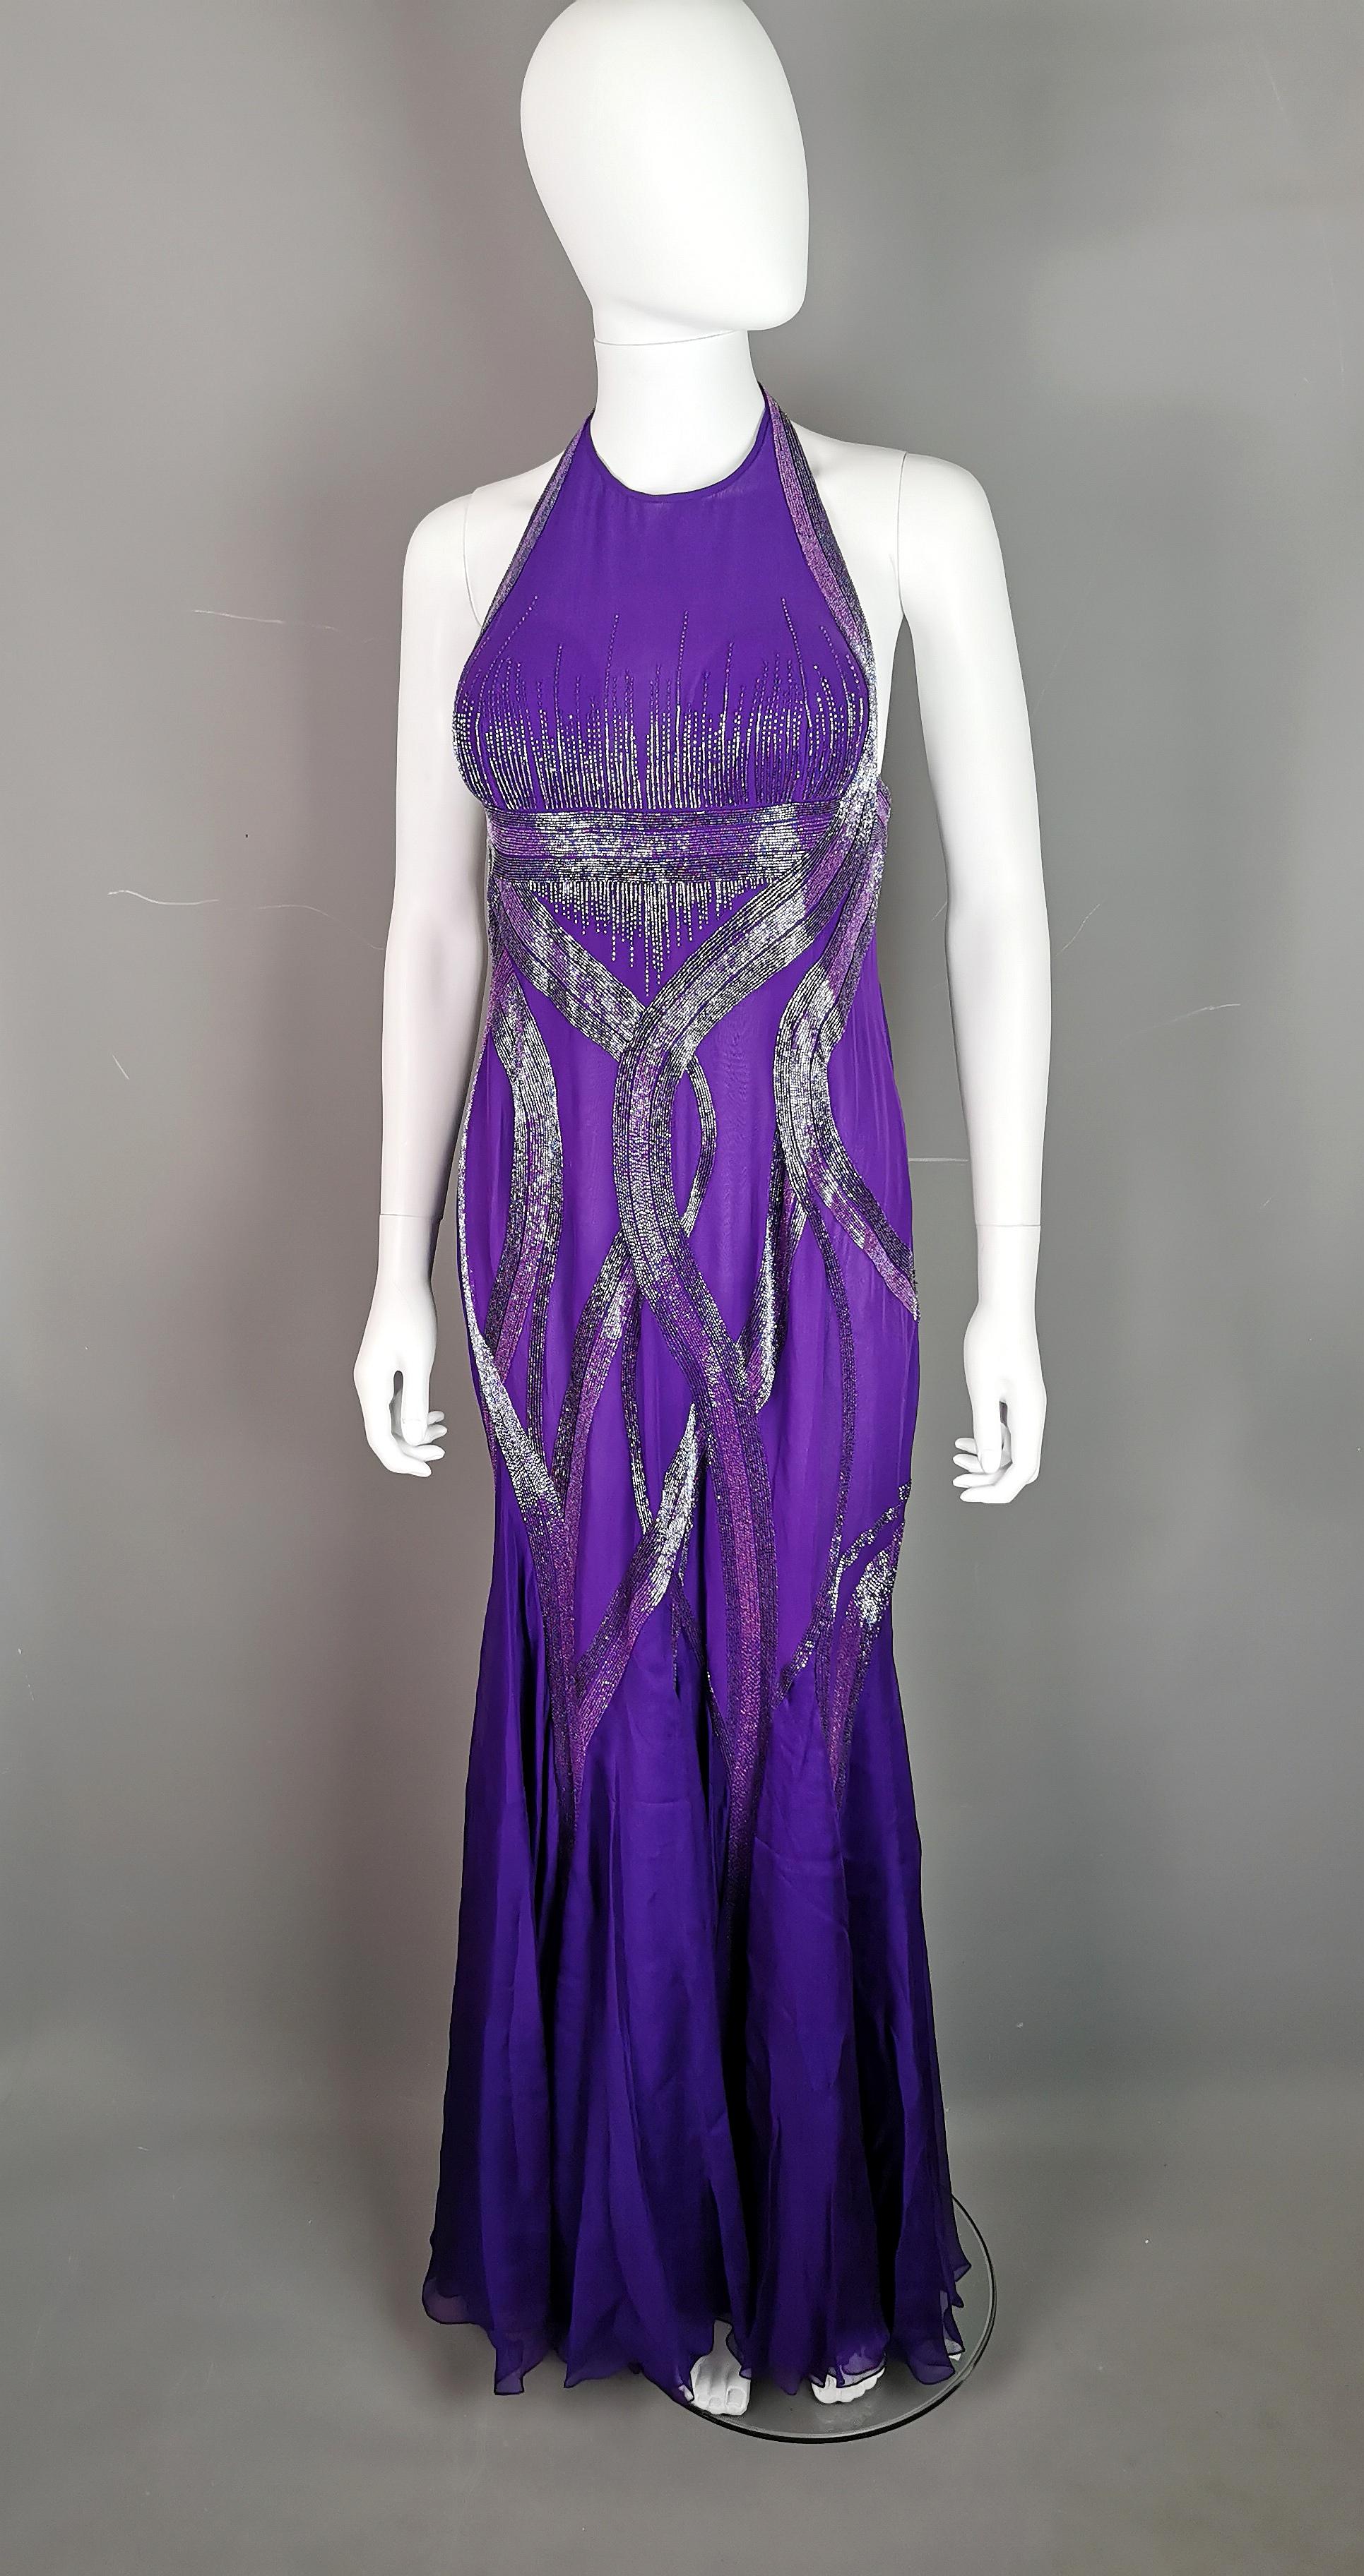 Magnifique robe de soirée vintage Versace en mousseline de soie violette perlée.

La silhouette épouse la forme du corps et les jupes en cascade s'épanouissent dans la moitié inférieure, avec une légère traîne dans le dos qui confère un peu